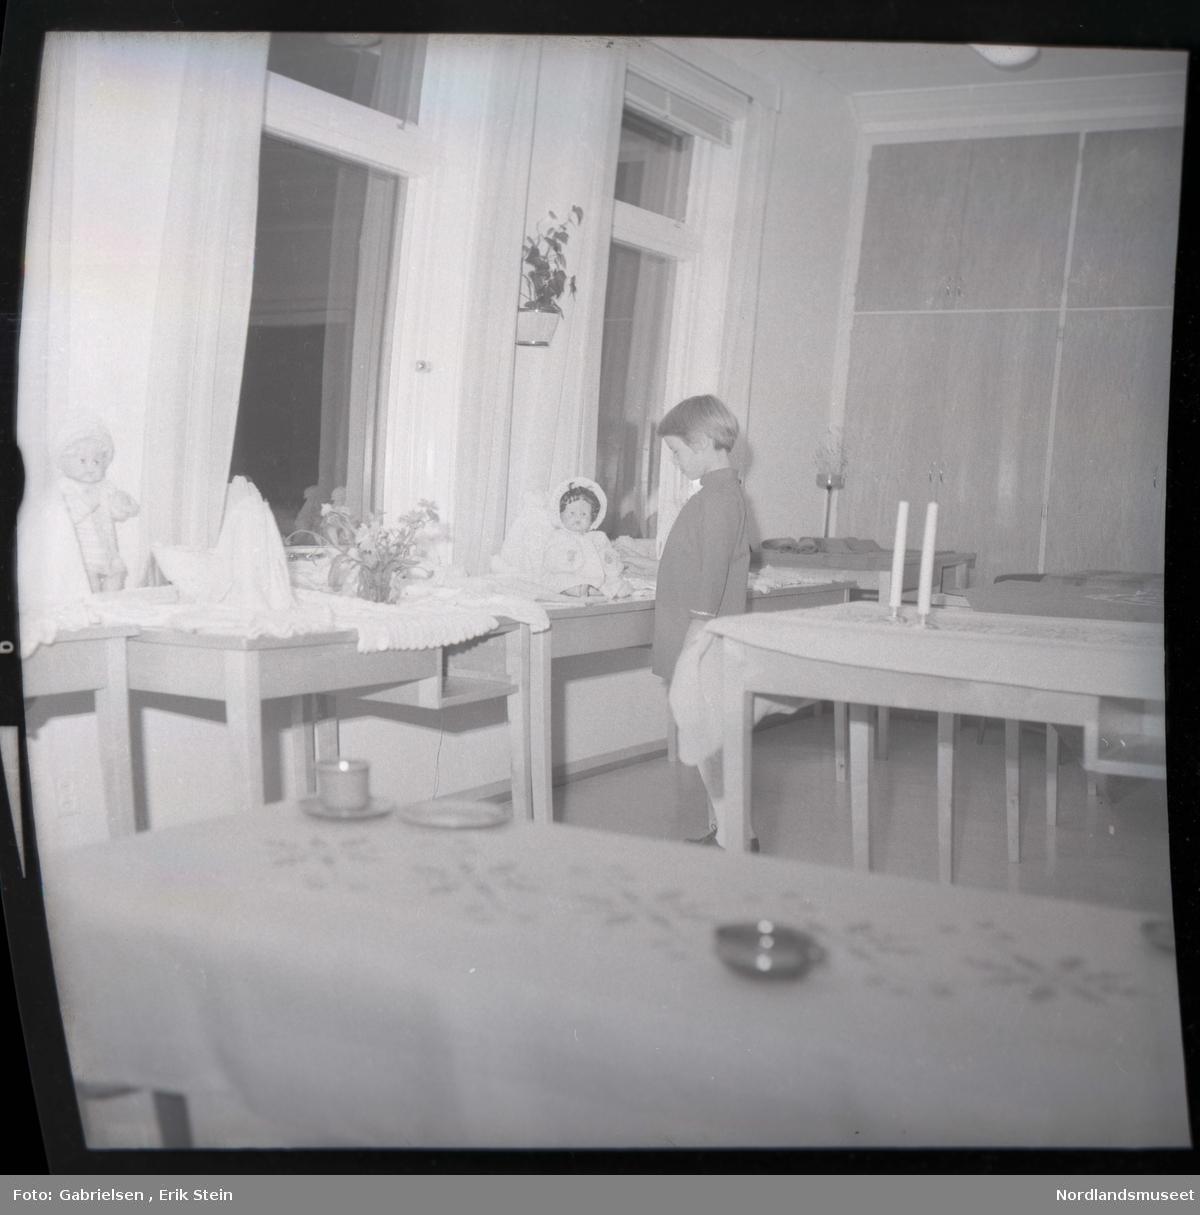 Fotografi av et barn som står inne i et rom og ser på en dukke
som ligger på en bord med en hvit duk 
som står mellom fire bord som står vedsiden av vinduer med gardiner som det ligger hvite duker på og en dukke som står lent på en vegg mellom to vinduer og man ser to andre bord
som står i rommet med duker på og to stearinlys som står
på bordet som står bak barnet i rommet og man ser
en potteplante som henger på veggen mellom to vinduer